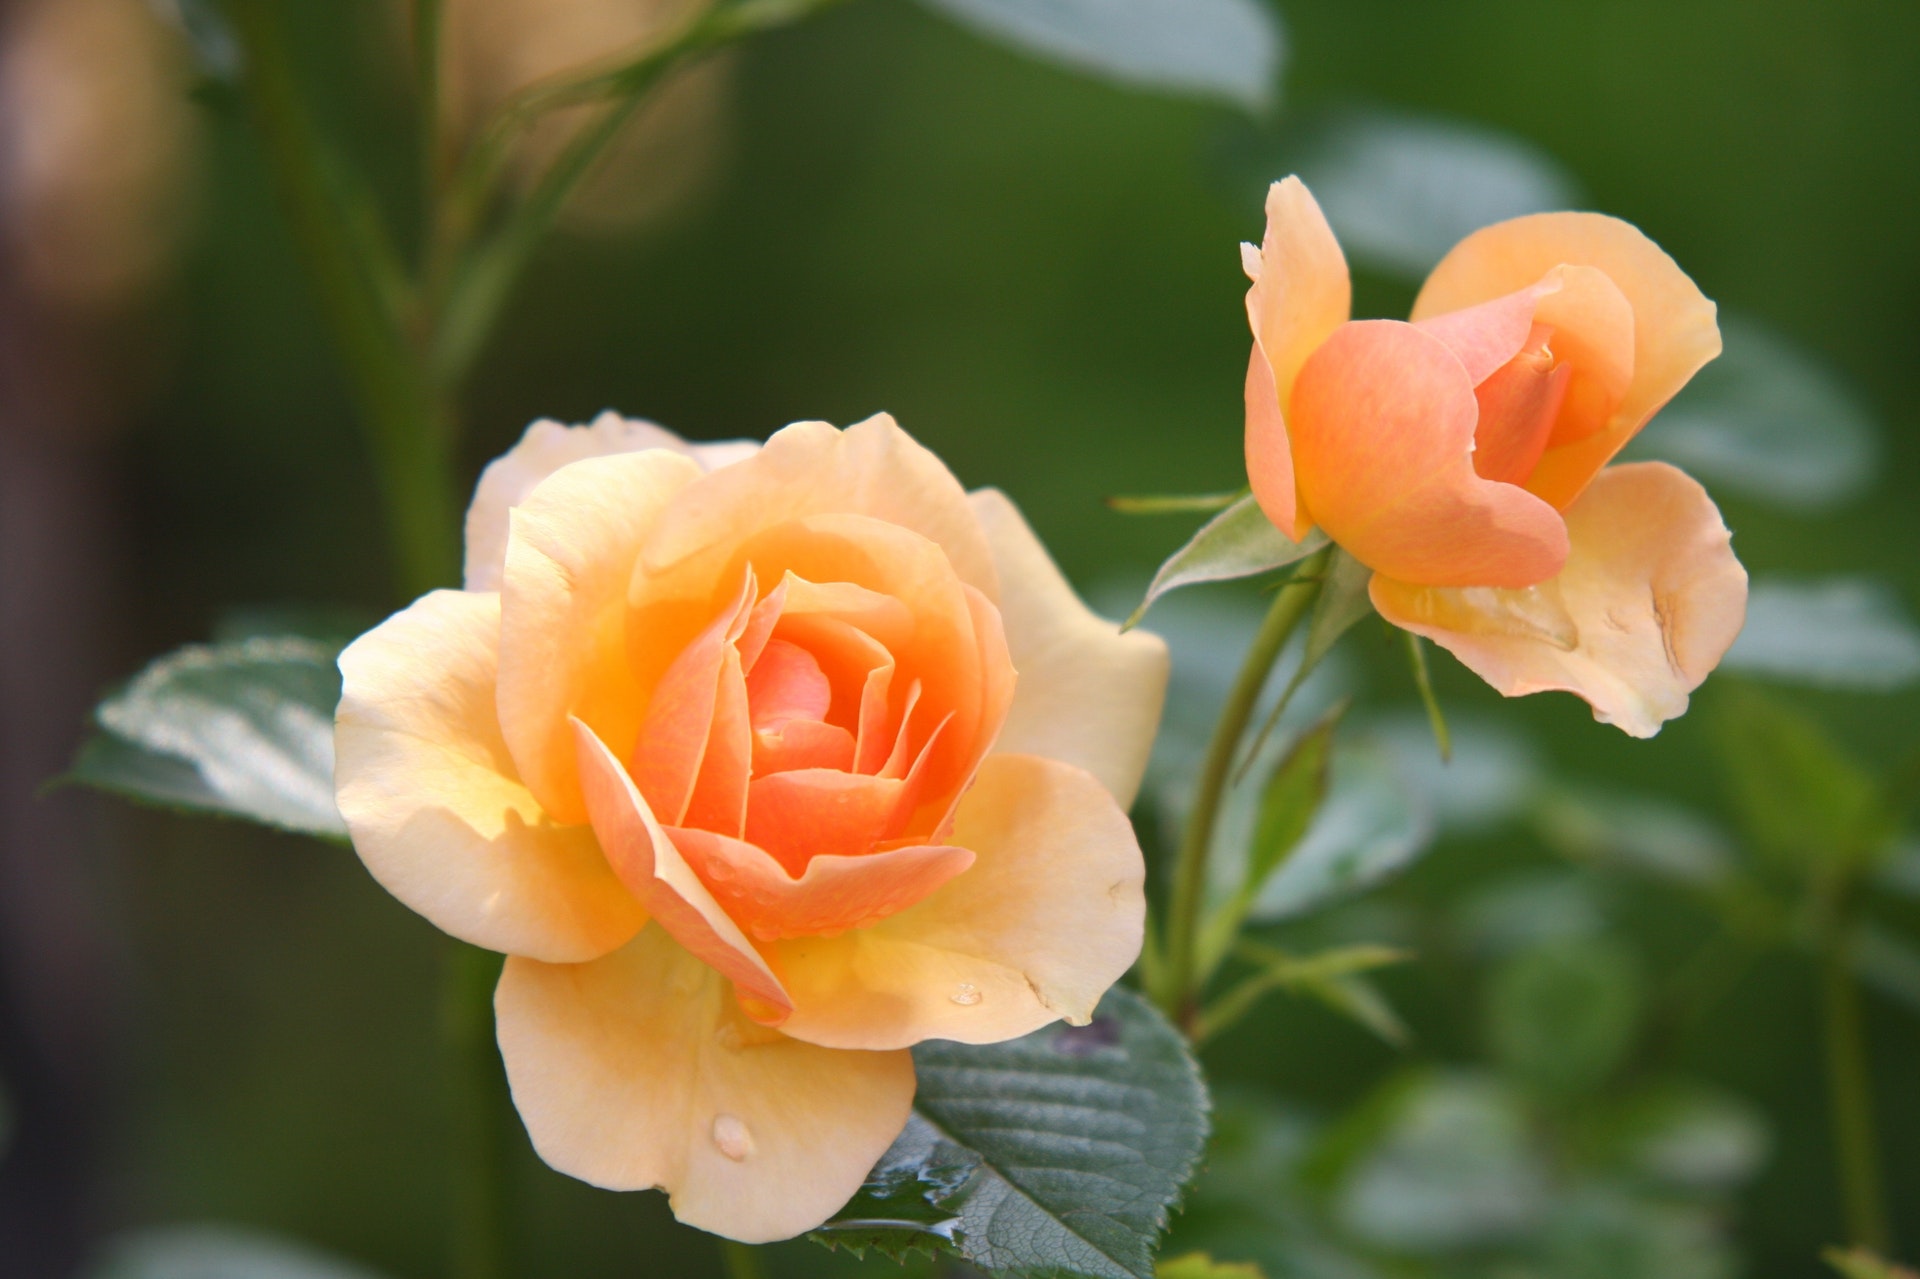 rose-flower-blossom-bloom-39517.jpeg